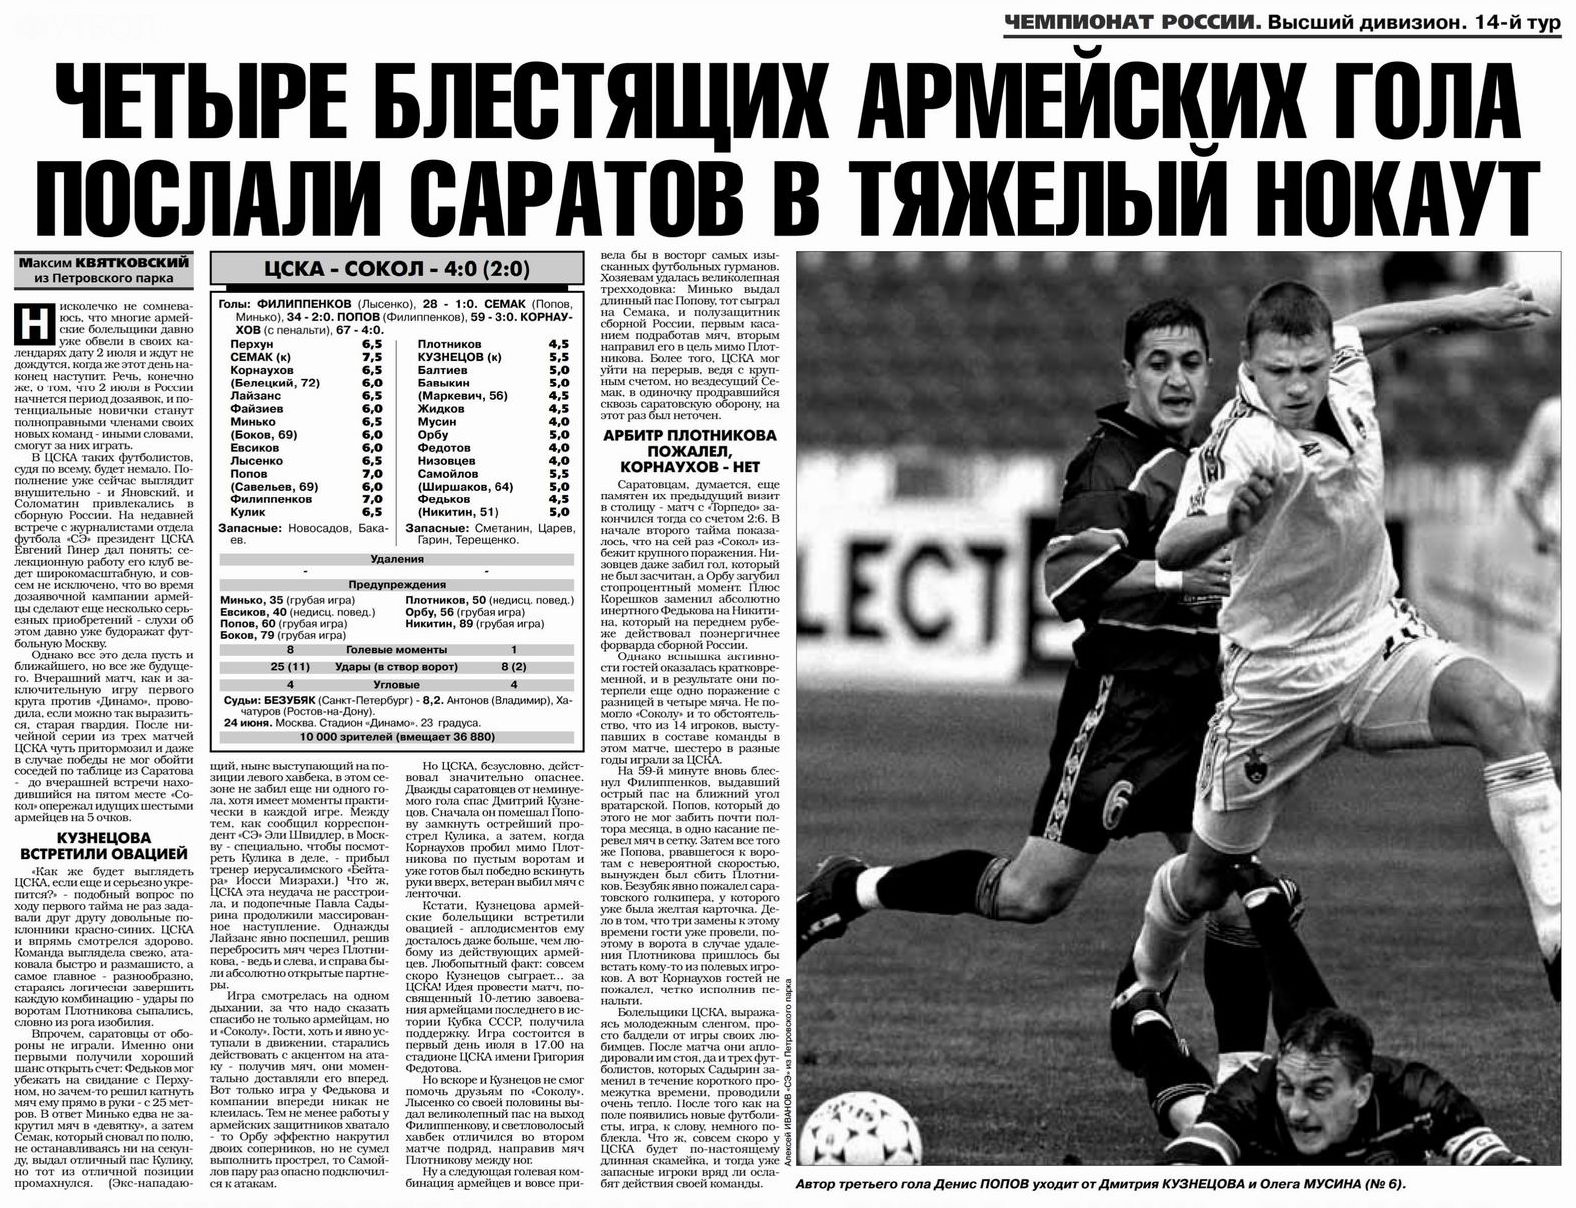 2001-06-24.CSKA-Sokol